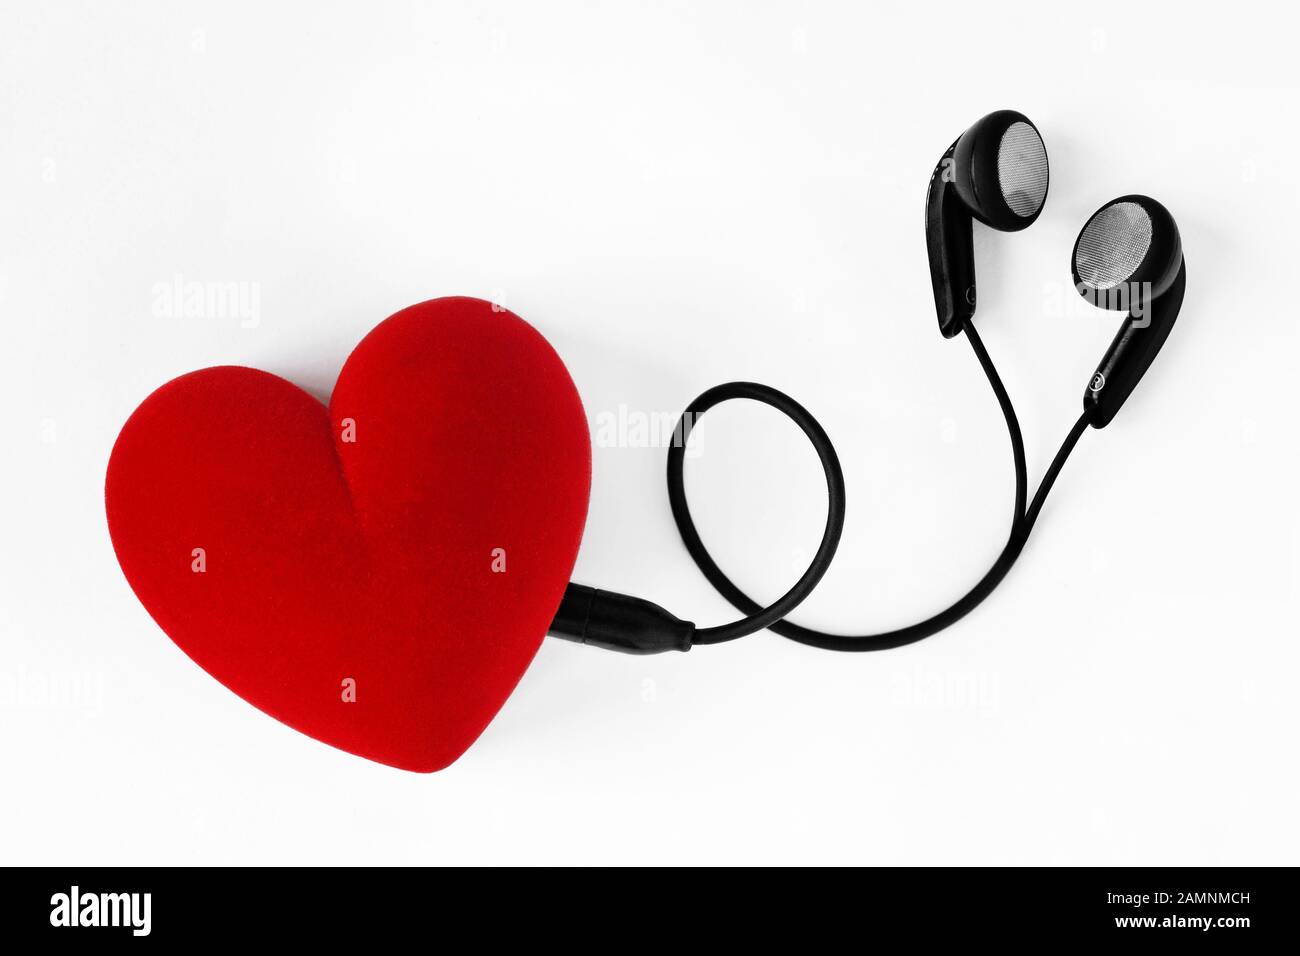 Earphones in heart shape - Concept of love Stock Photo